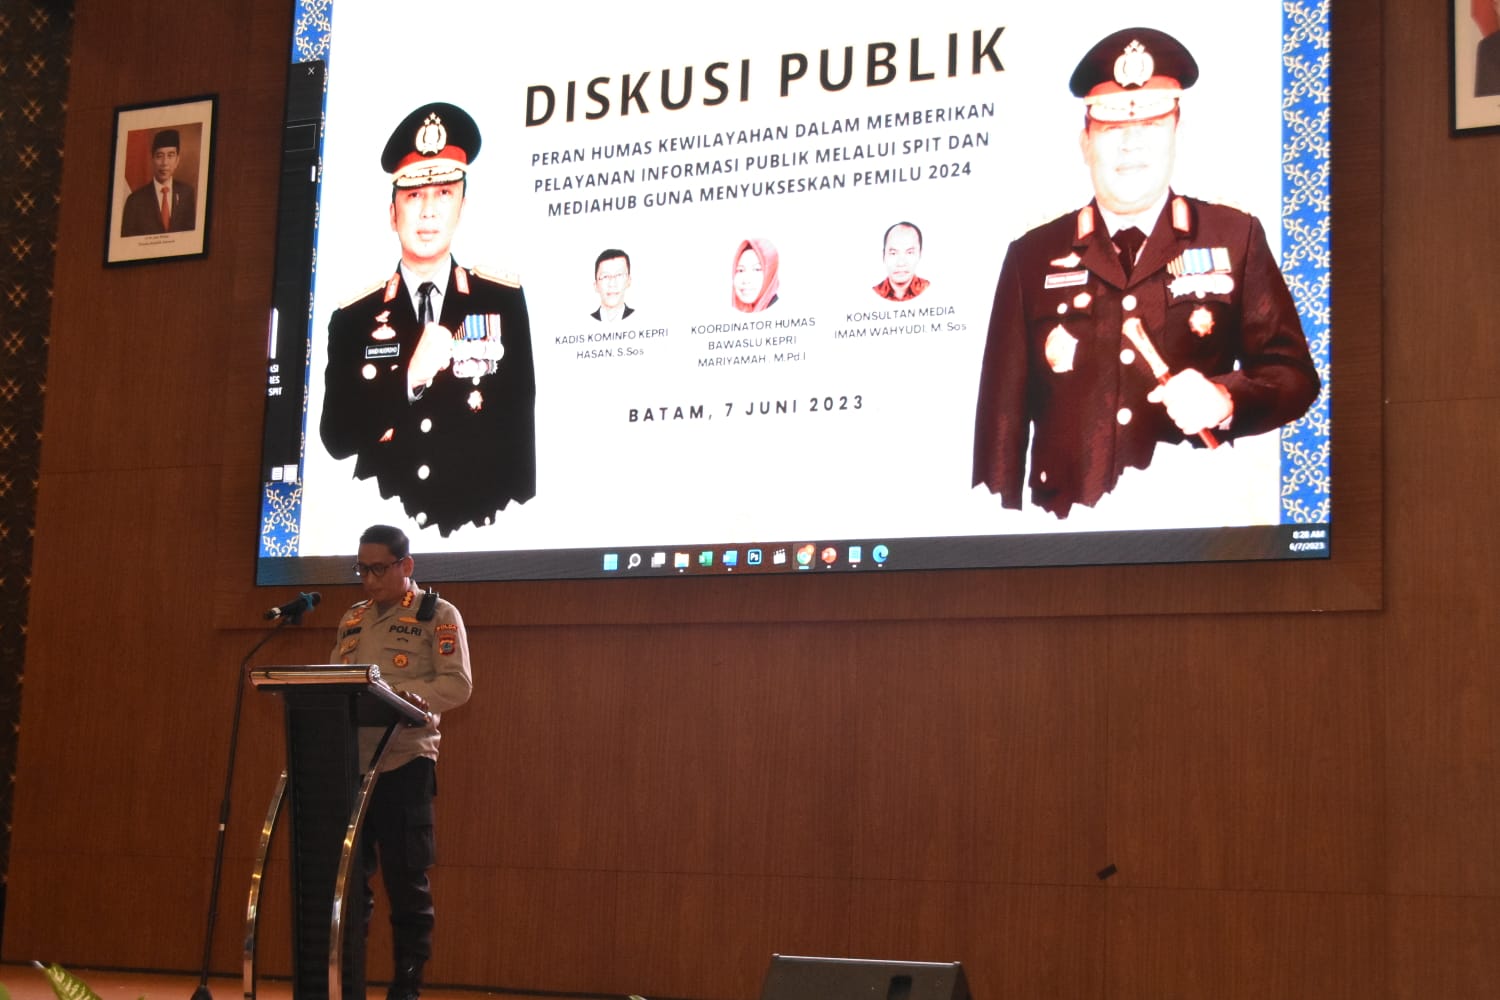 Polda Kepri Gelar Diskusi Publik Bersama Divisi Humas Polri Guna Menyukseskan Pemilu 2024